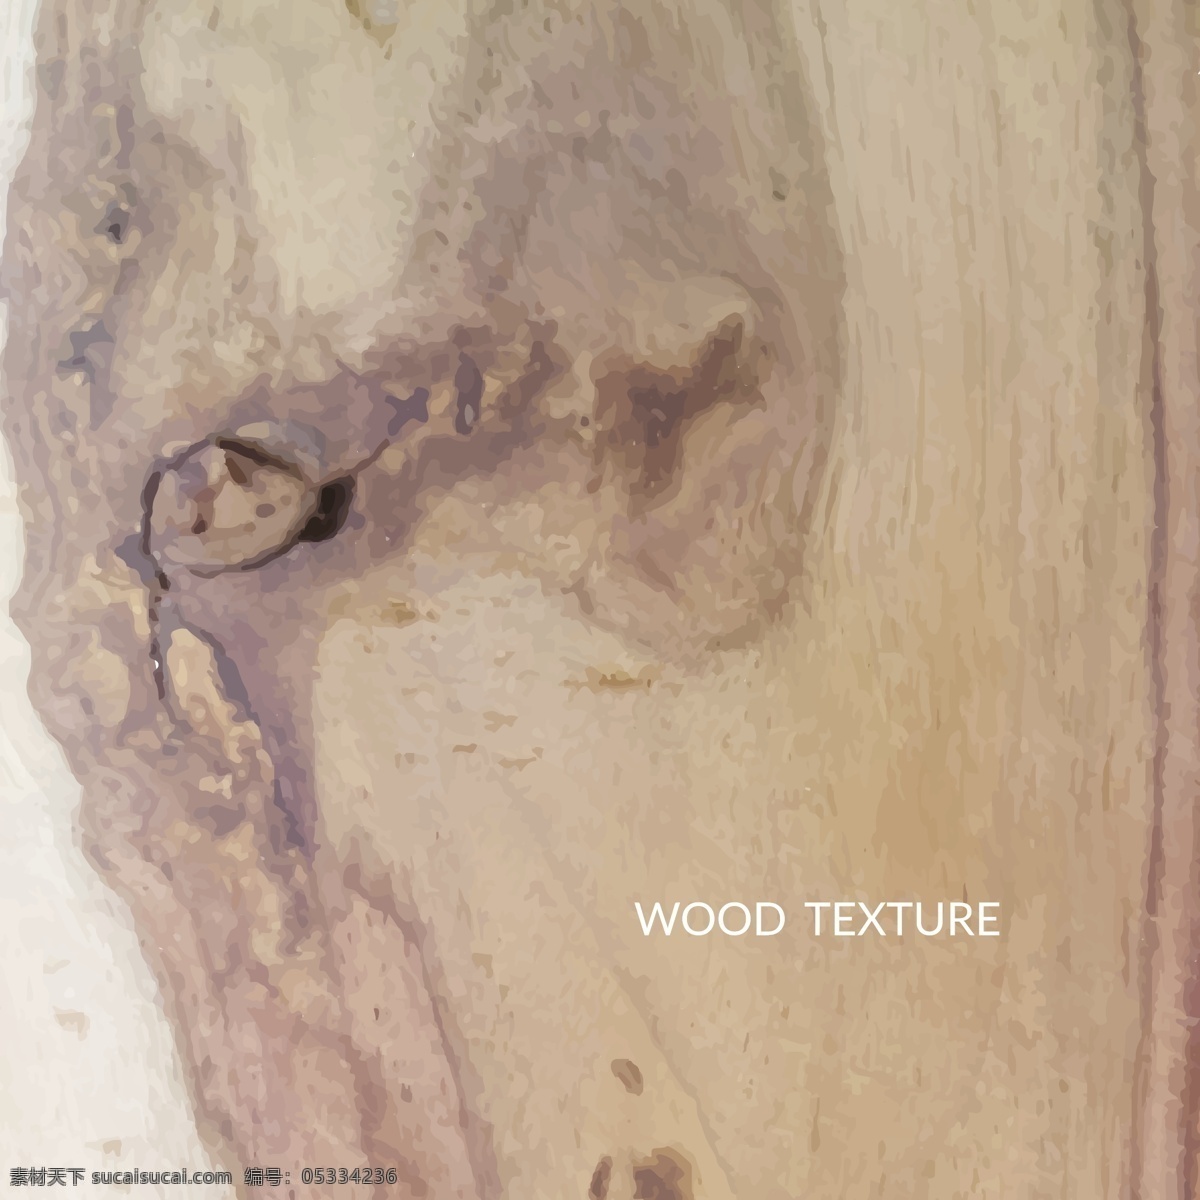 抽象 木 纹理 背景 木材 壁纸 自然 旧的 木制 材料 裂纹 表面